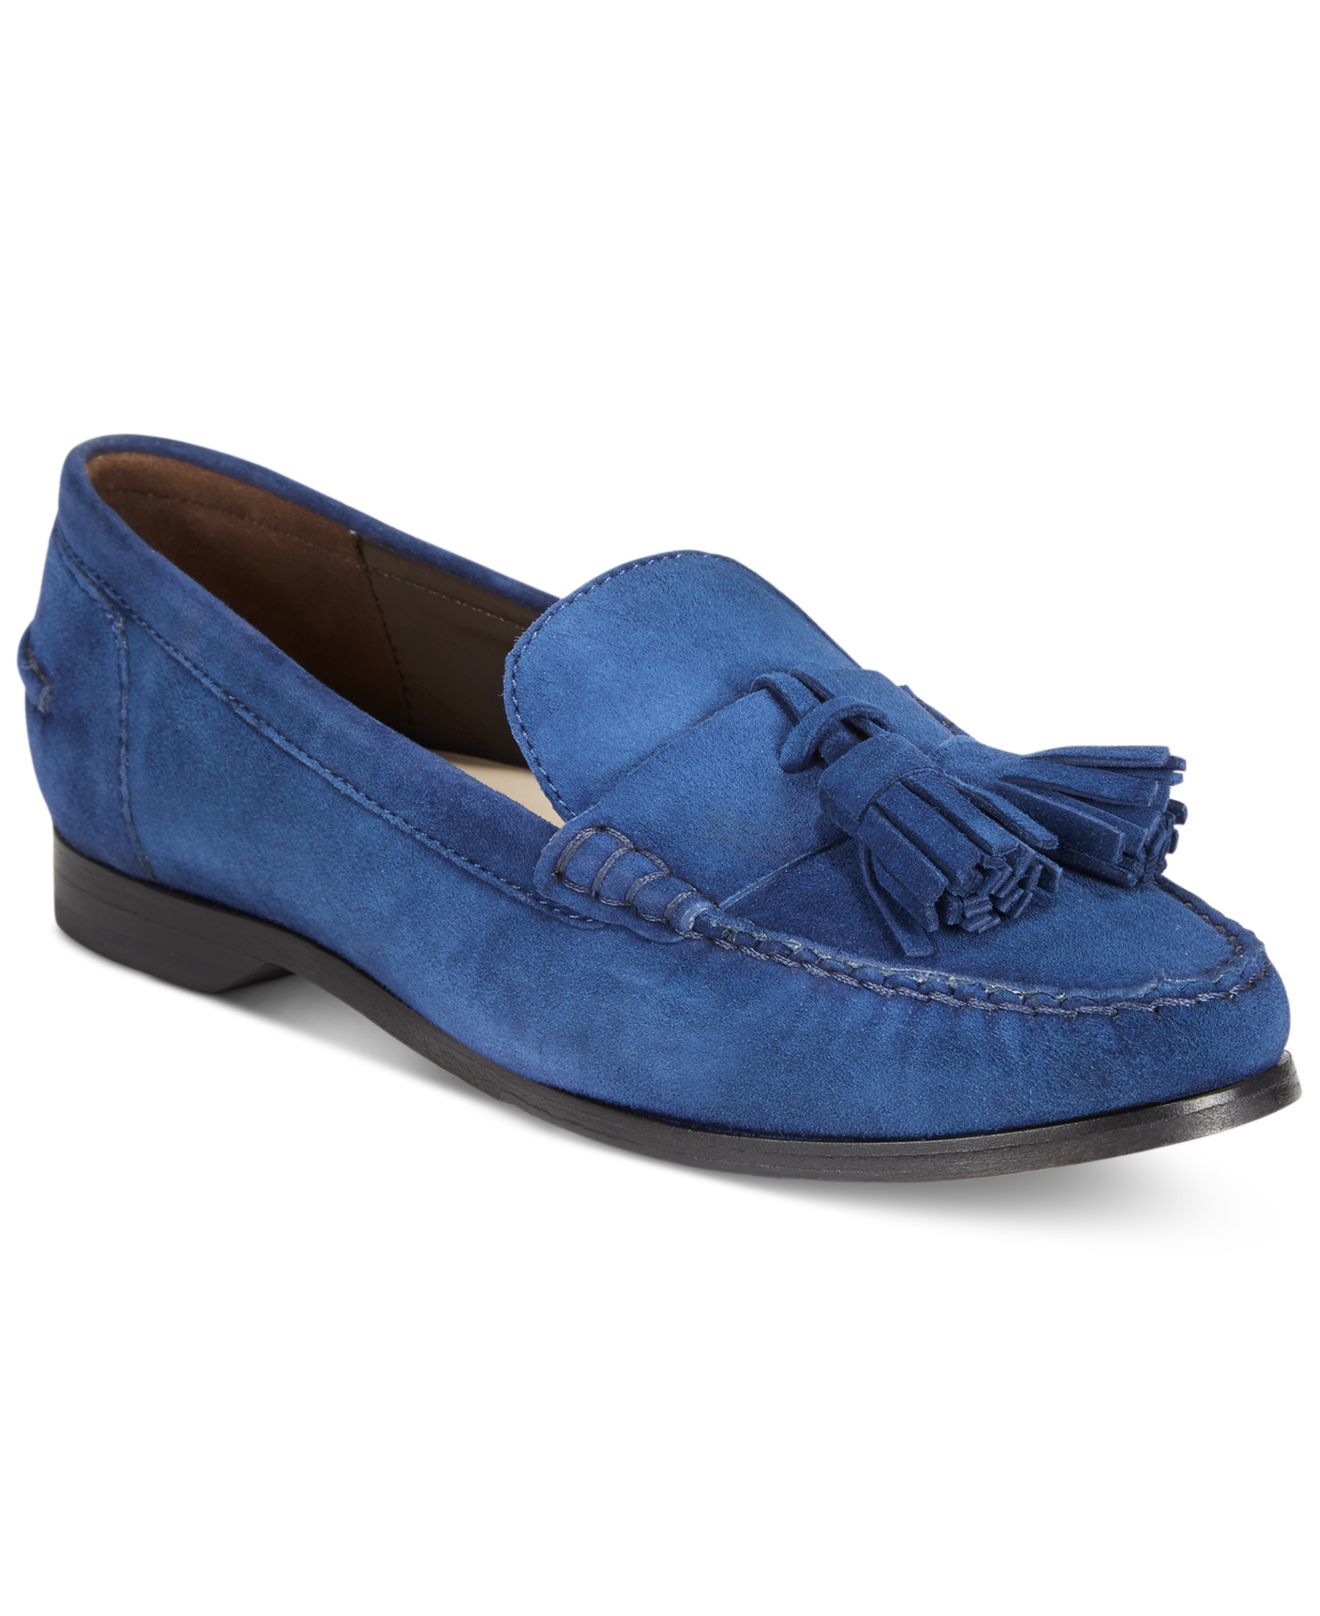 Lyst - Cole Haan Women's Pinch Grand Tassel Loafers in Blue